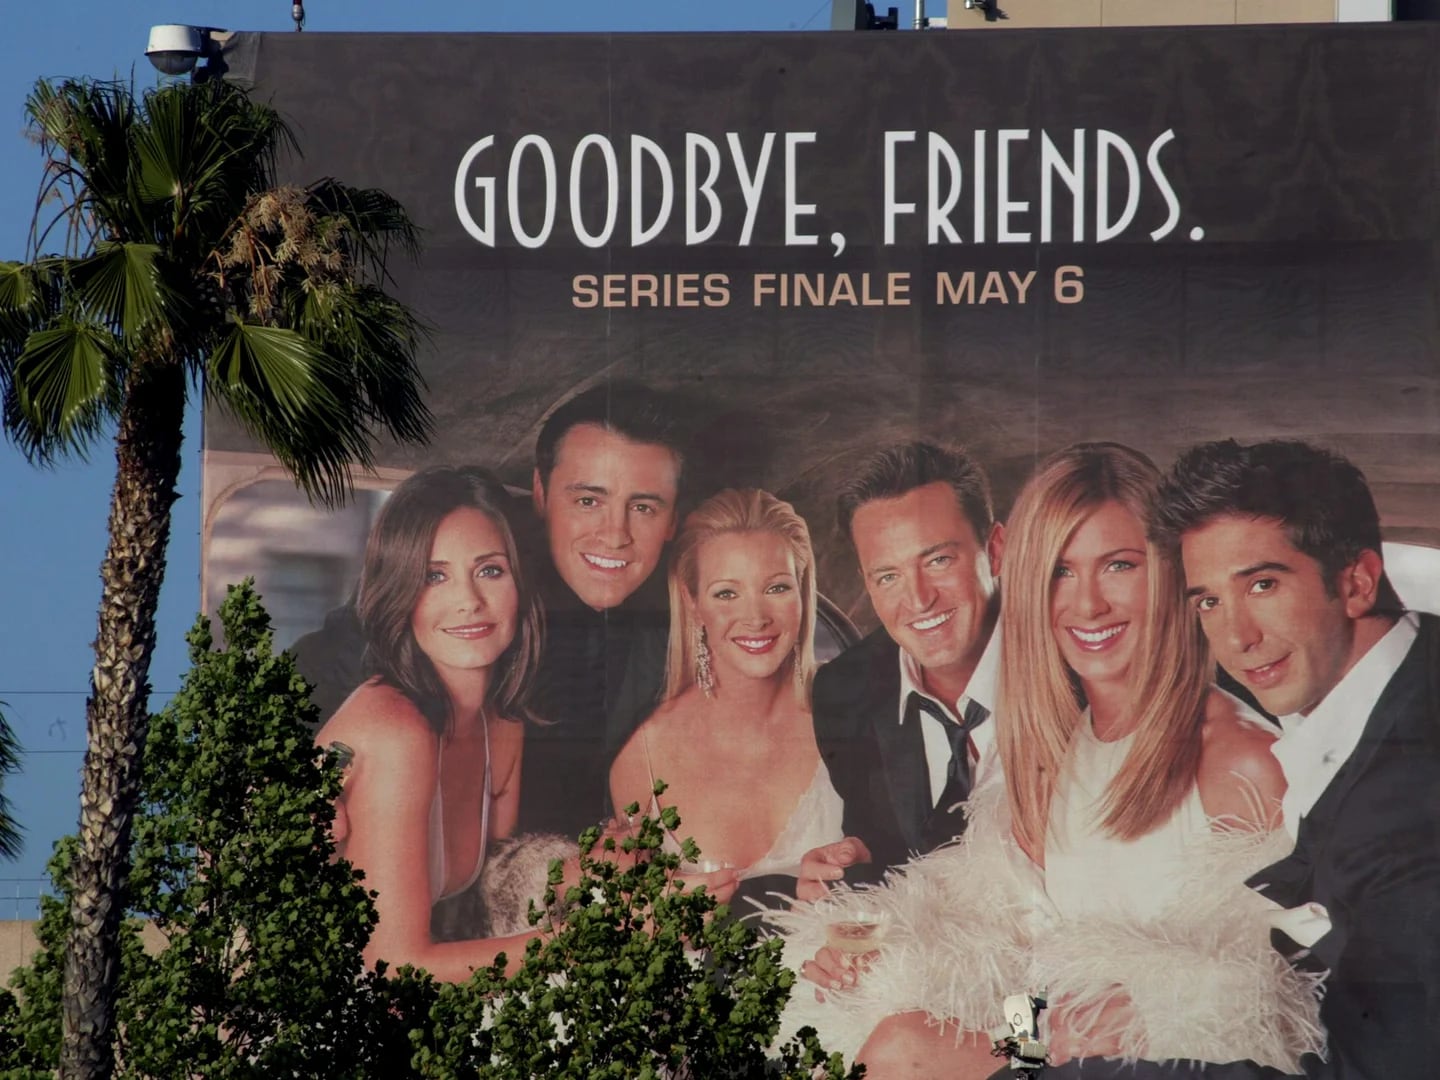 El Telégrafo - La popular serie 'Friends' cumple 28 años de su estreno